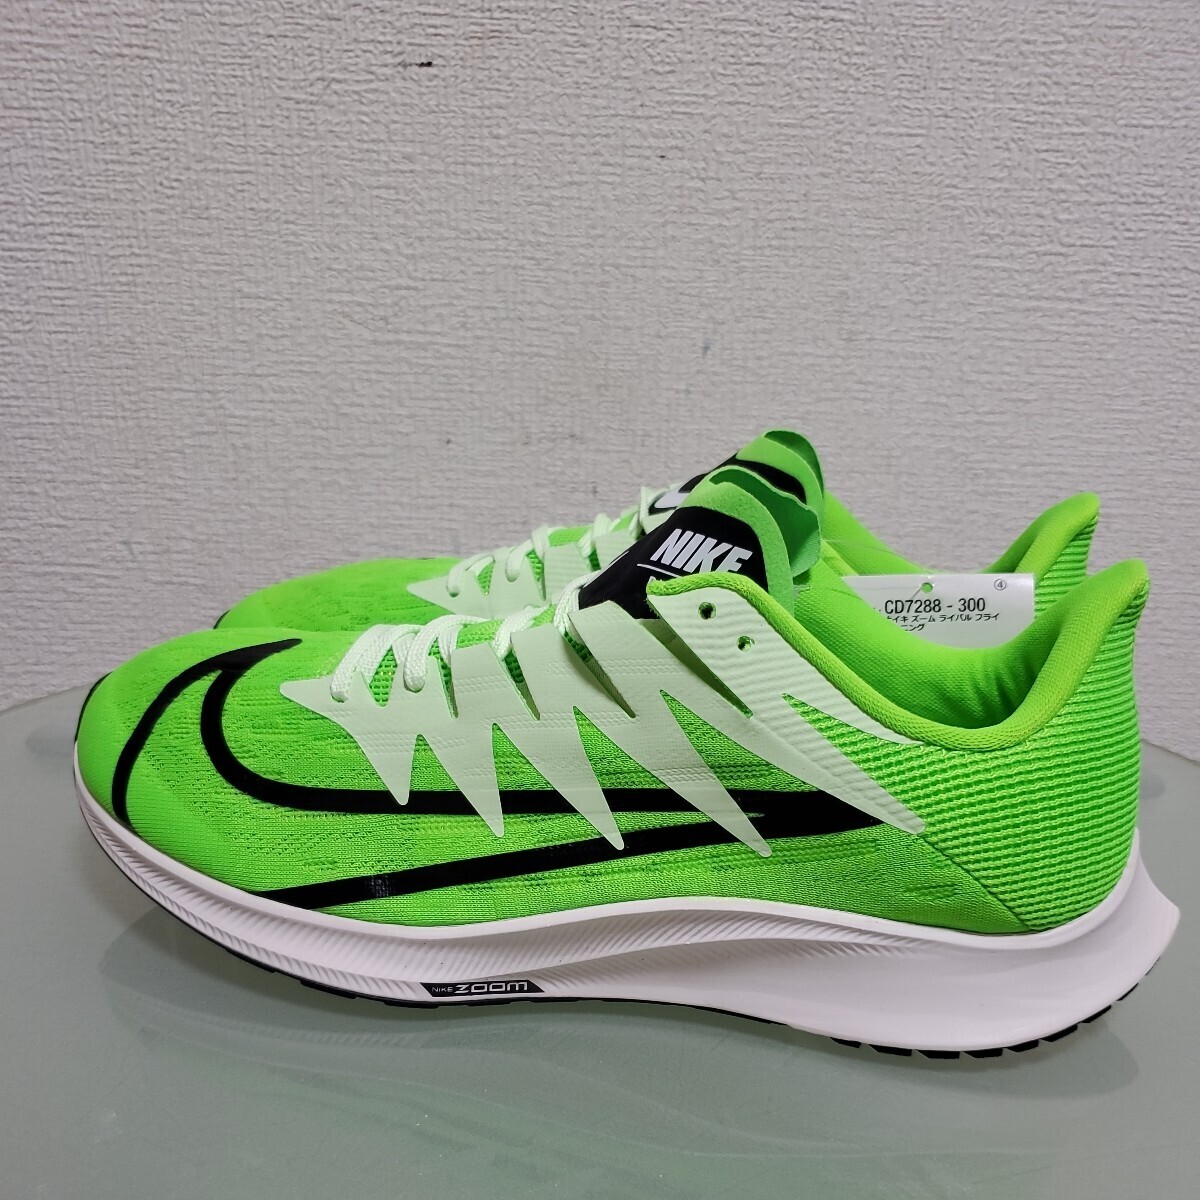 NIKE Nike ZOOM RIVAL FLY zoom соперник fly бег обувь спортивные туфли 26.5. зеленый новый товар не использовался дом хранение товар легкий 